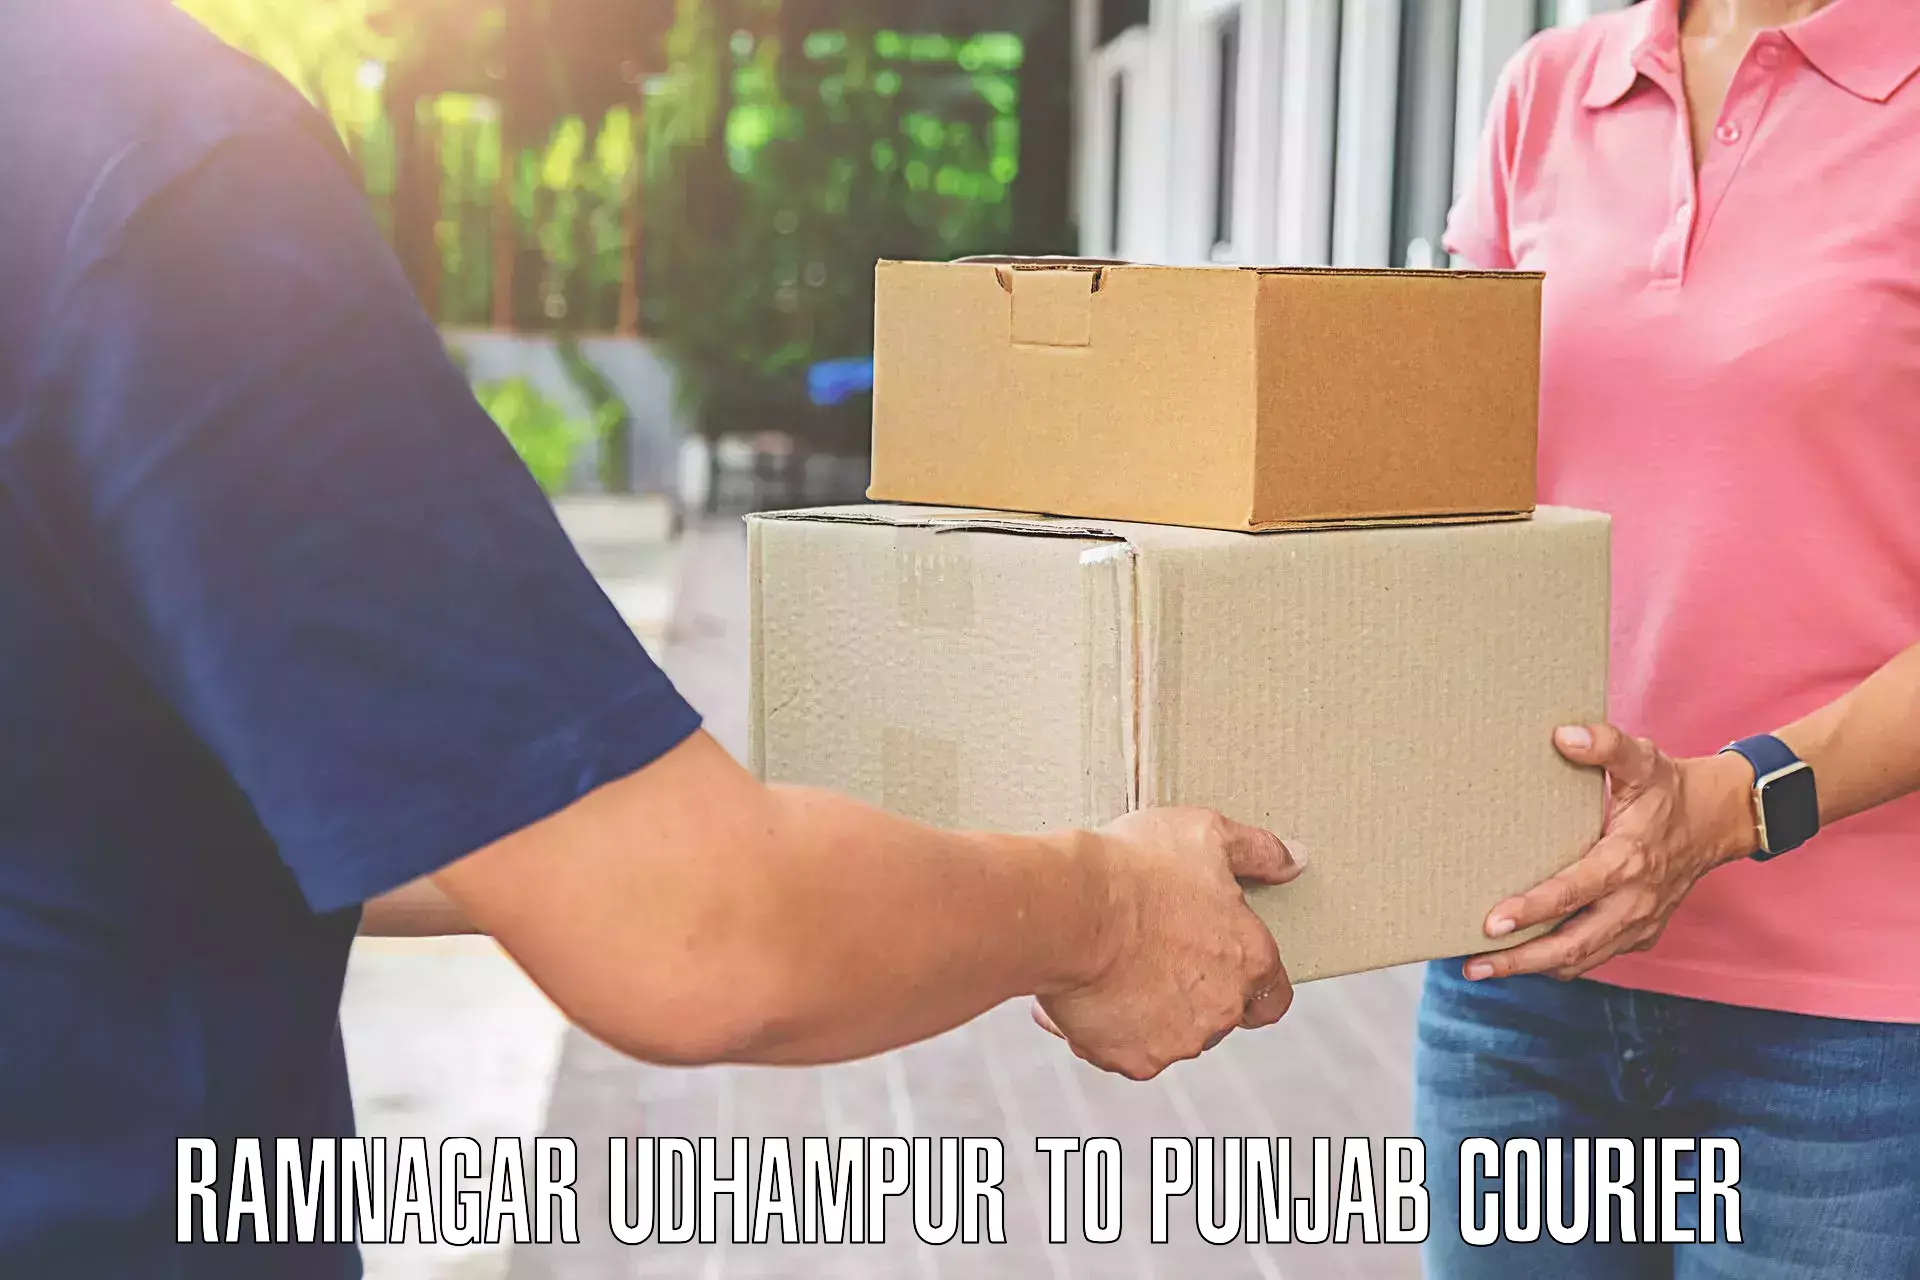 Luggage delivery system Ramnagar Udhampur to Batala